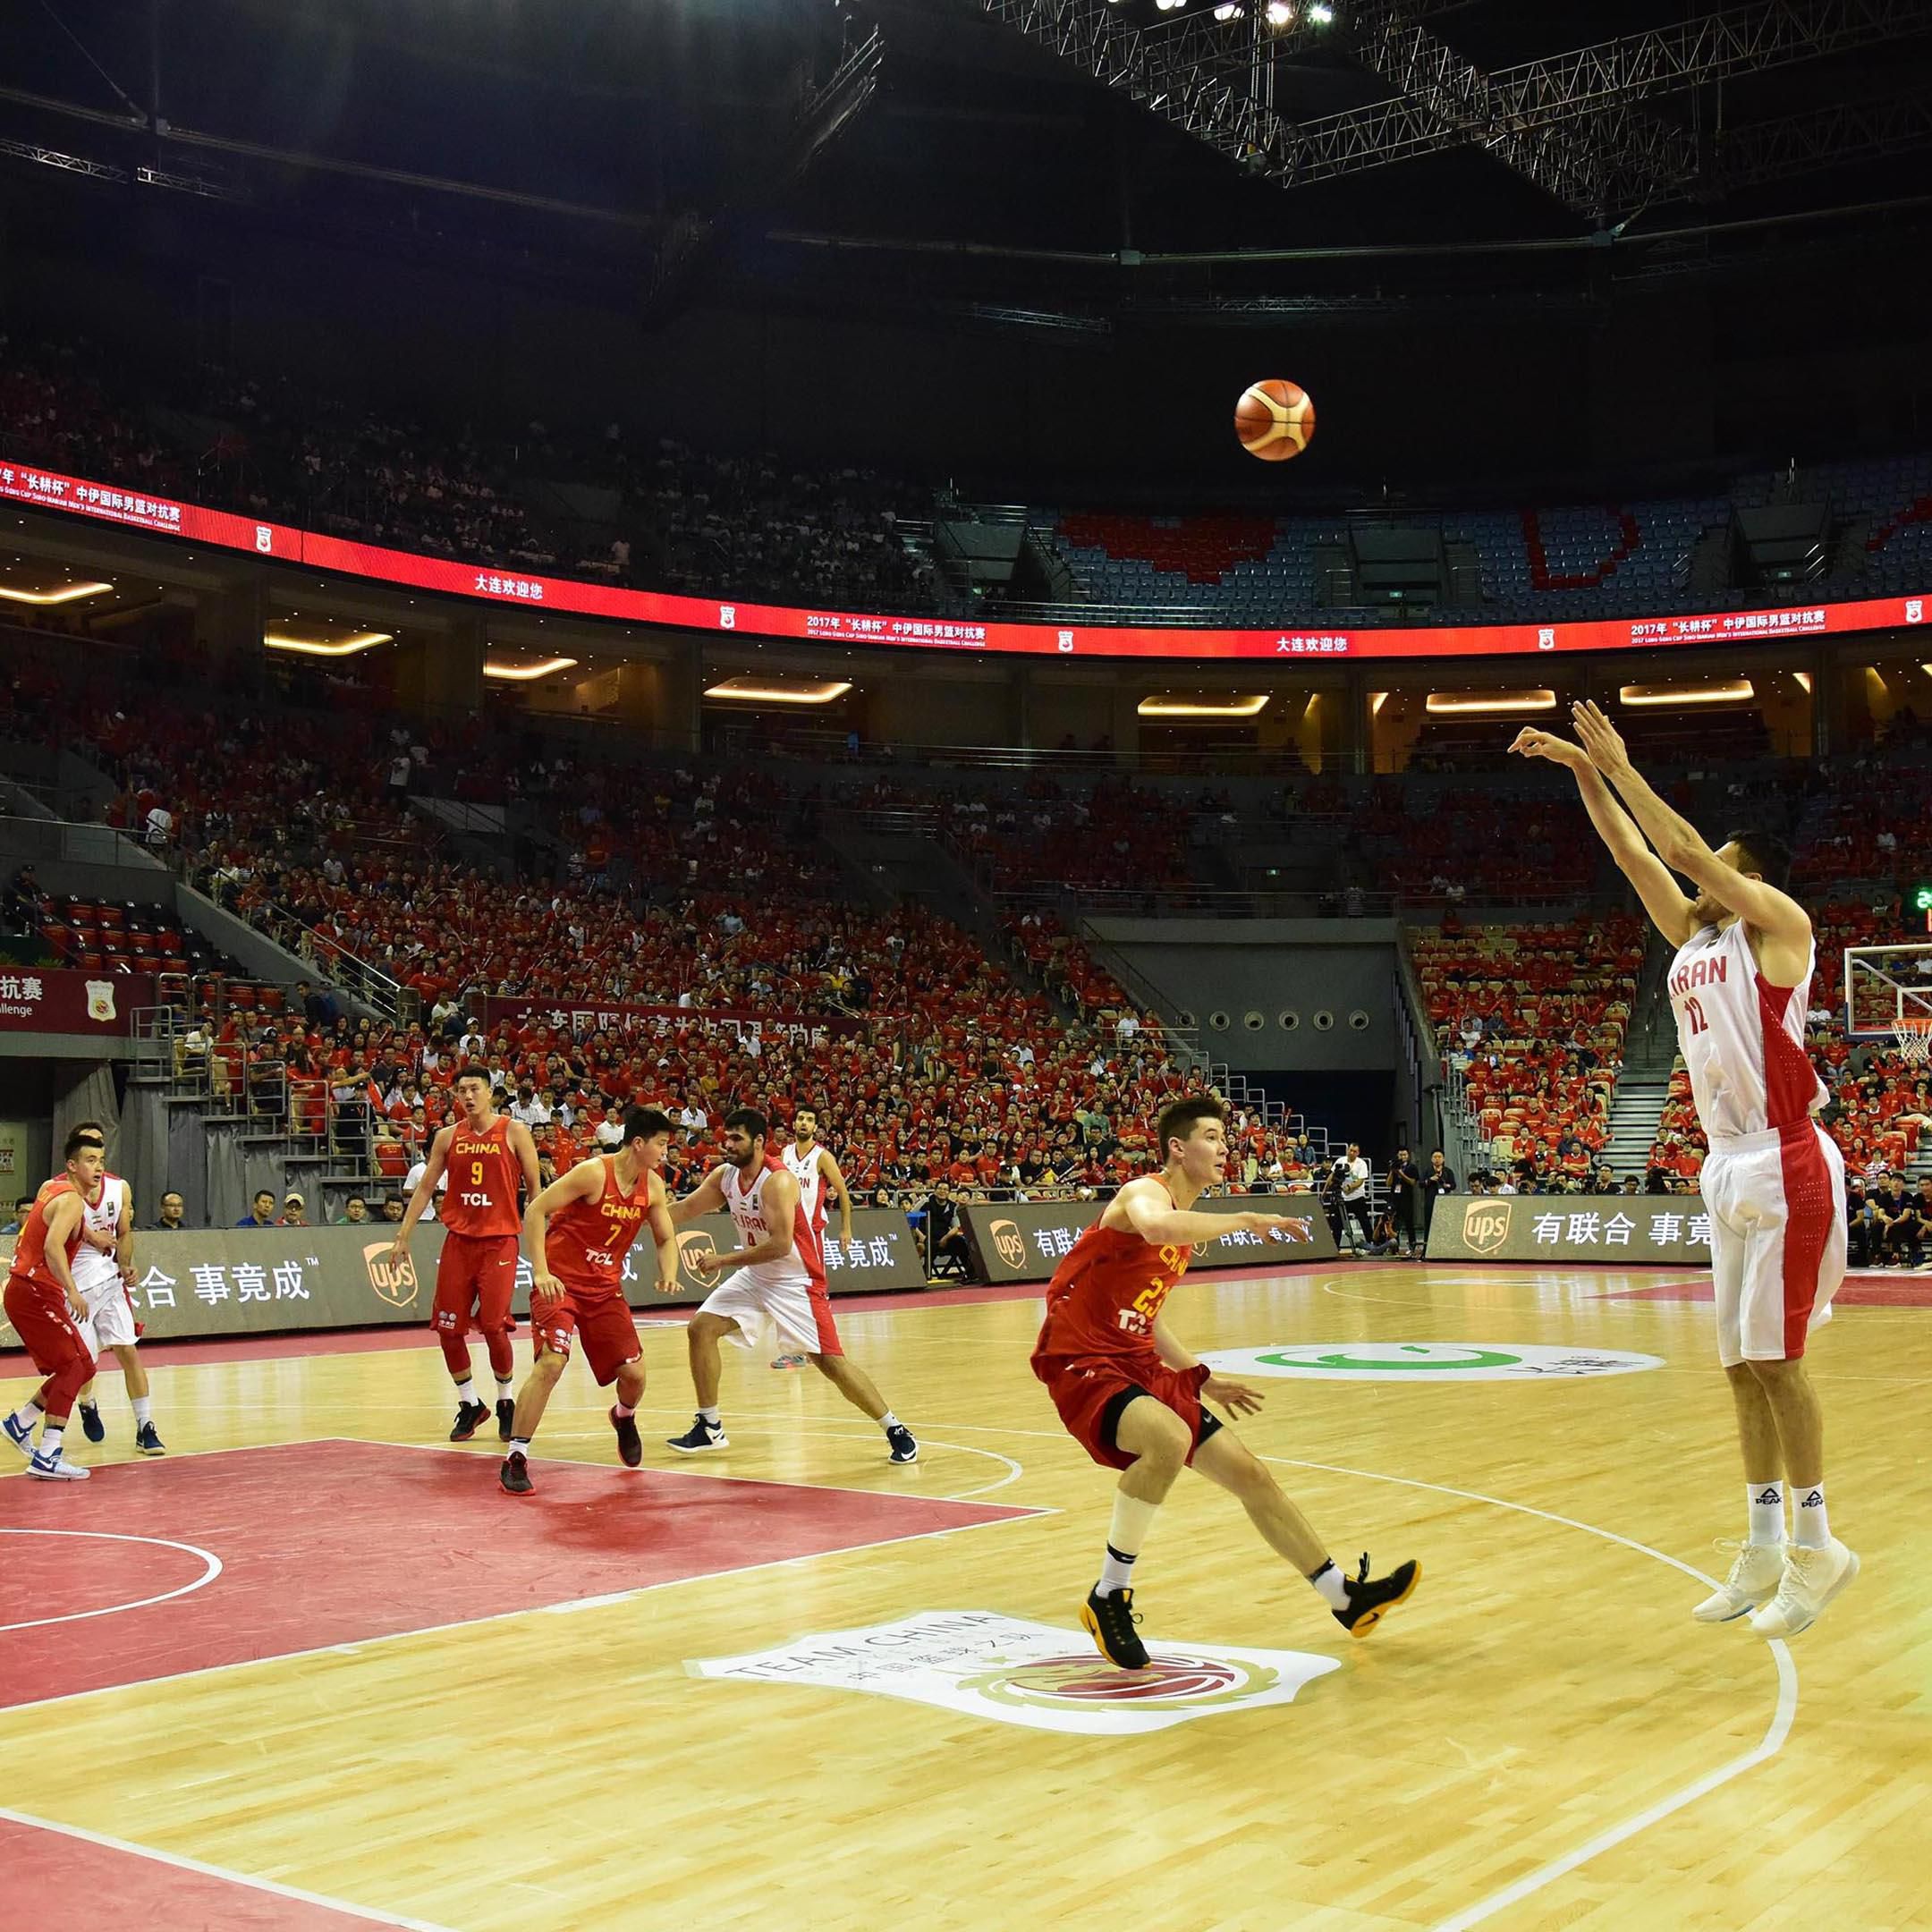 Basketball Match in the Dalian Sports Center